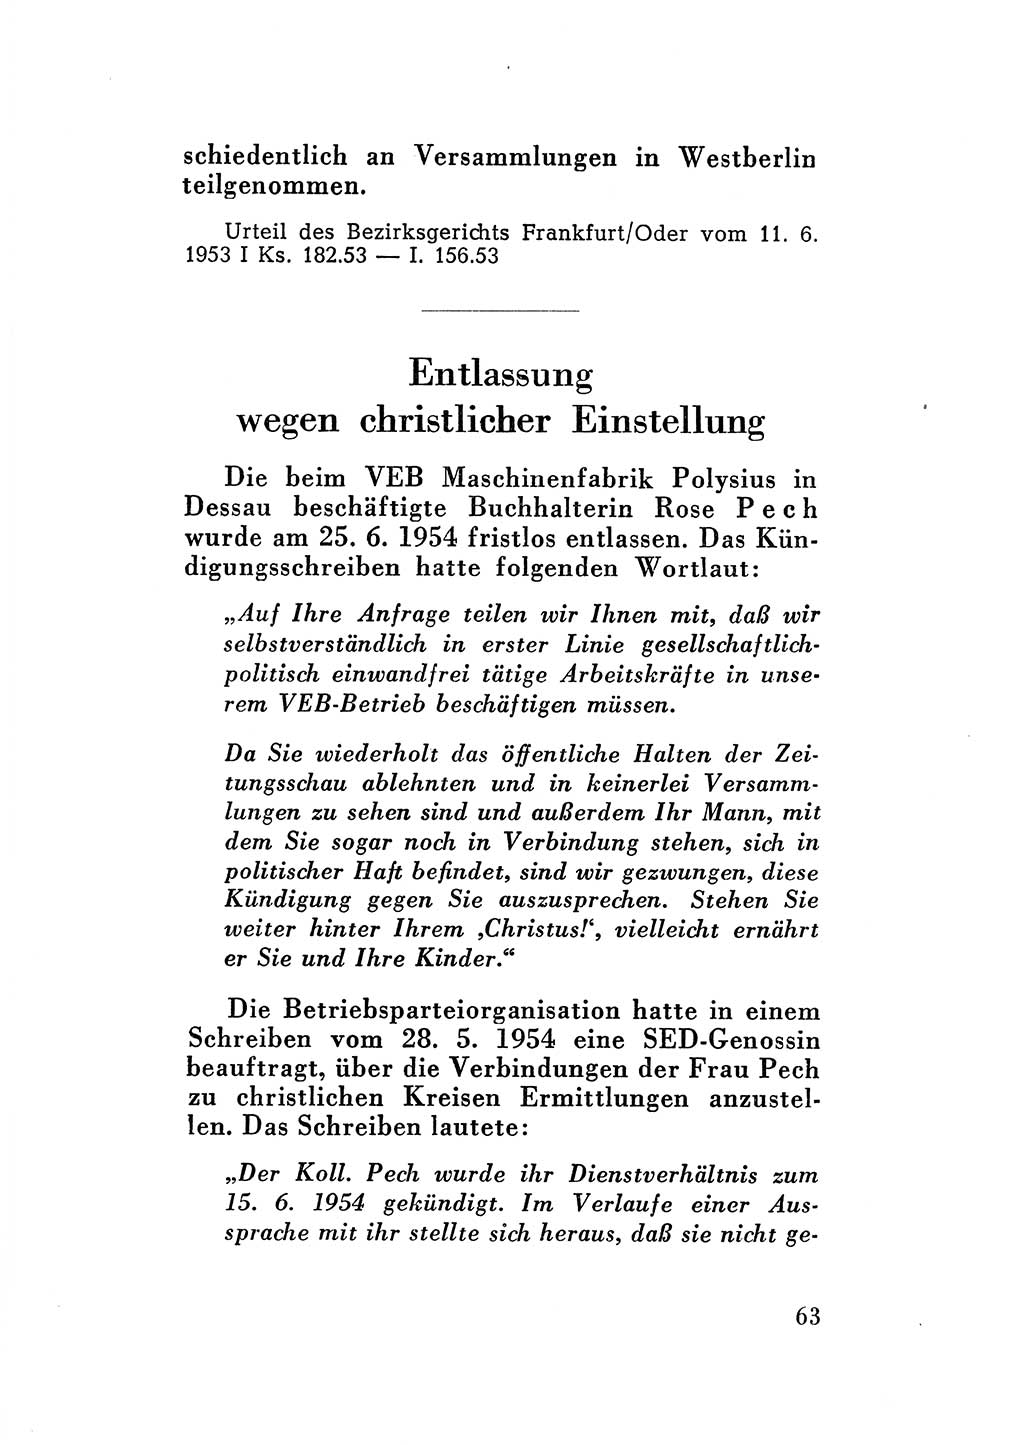 Katalog des Unrechts, Untersuchungsausschuß Freiheitlicher Juristen (UfJ) [Bundesrepublik Deutschland (BRD)] 1956, Seite 63 (Kat. UnR. UfJ BRD 1956, S. 63)